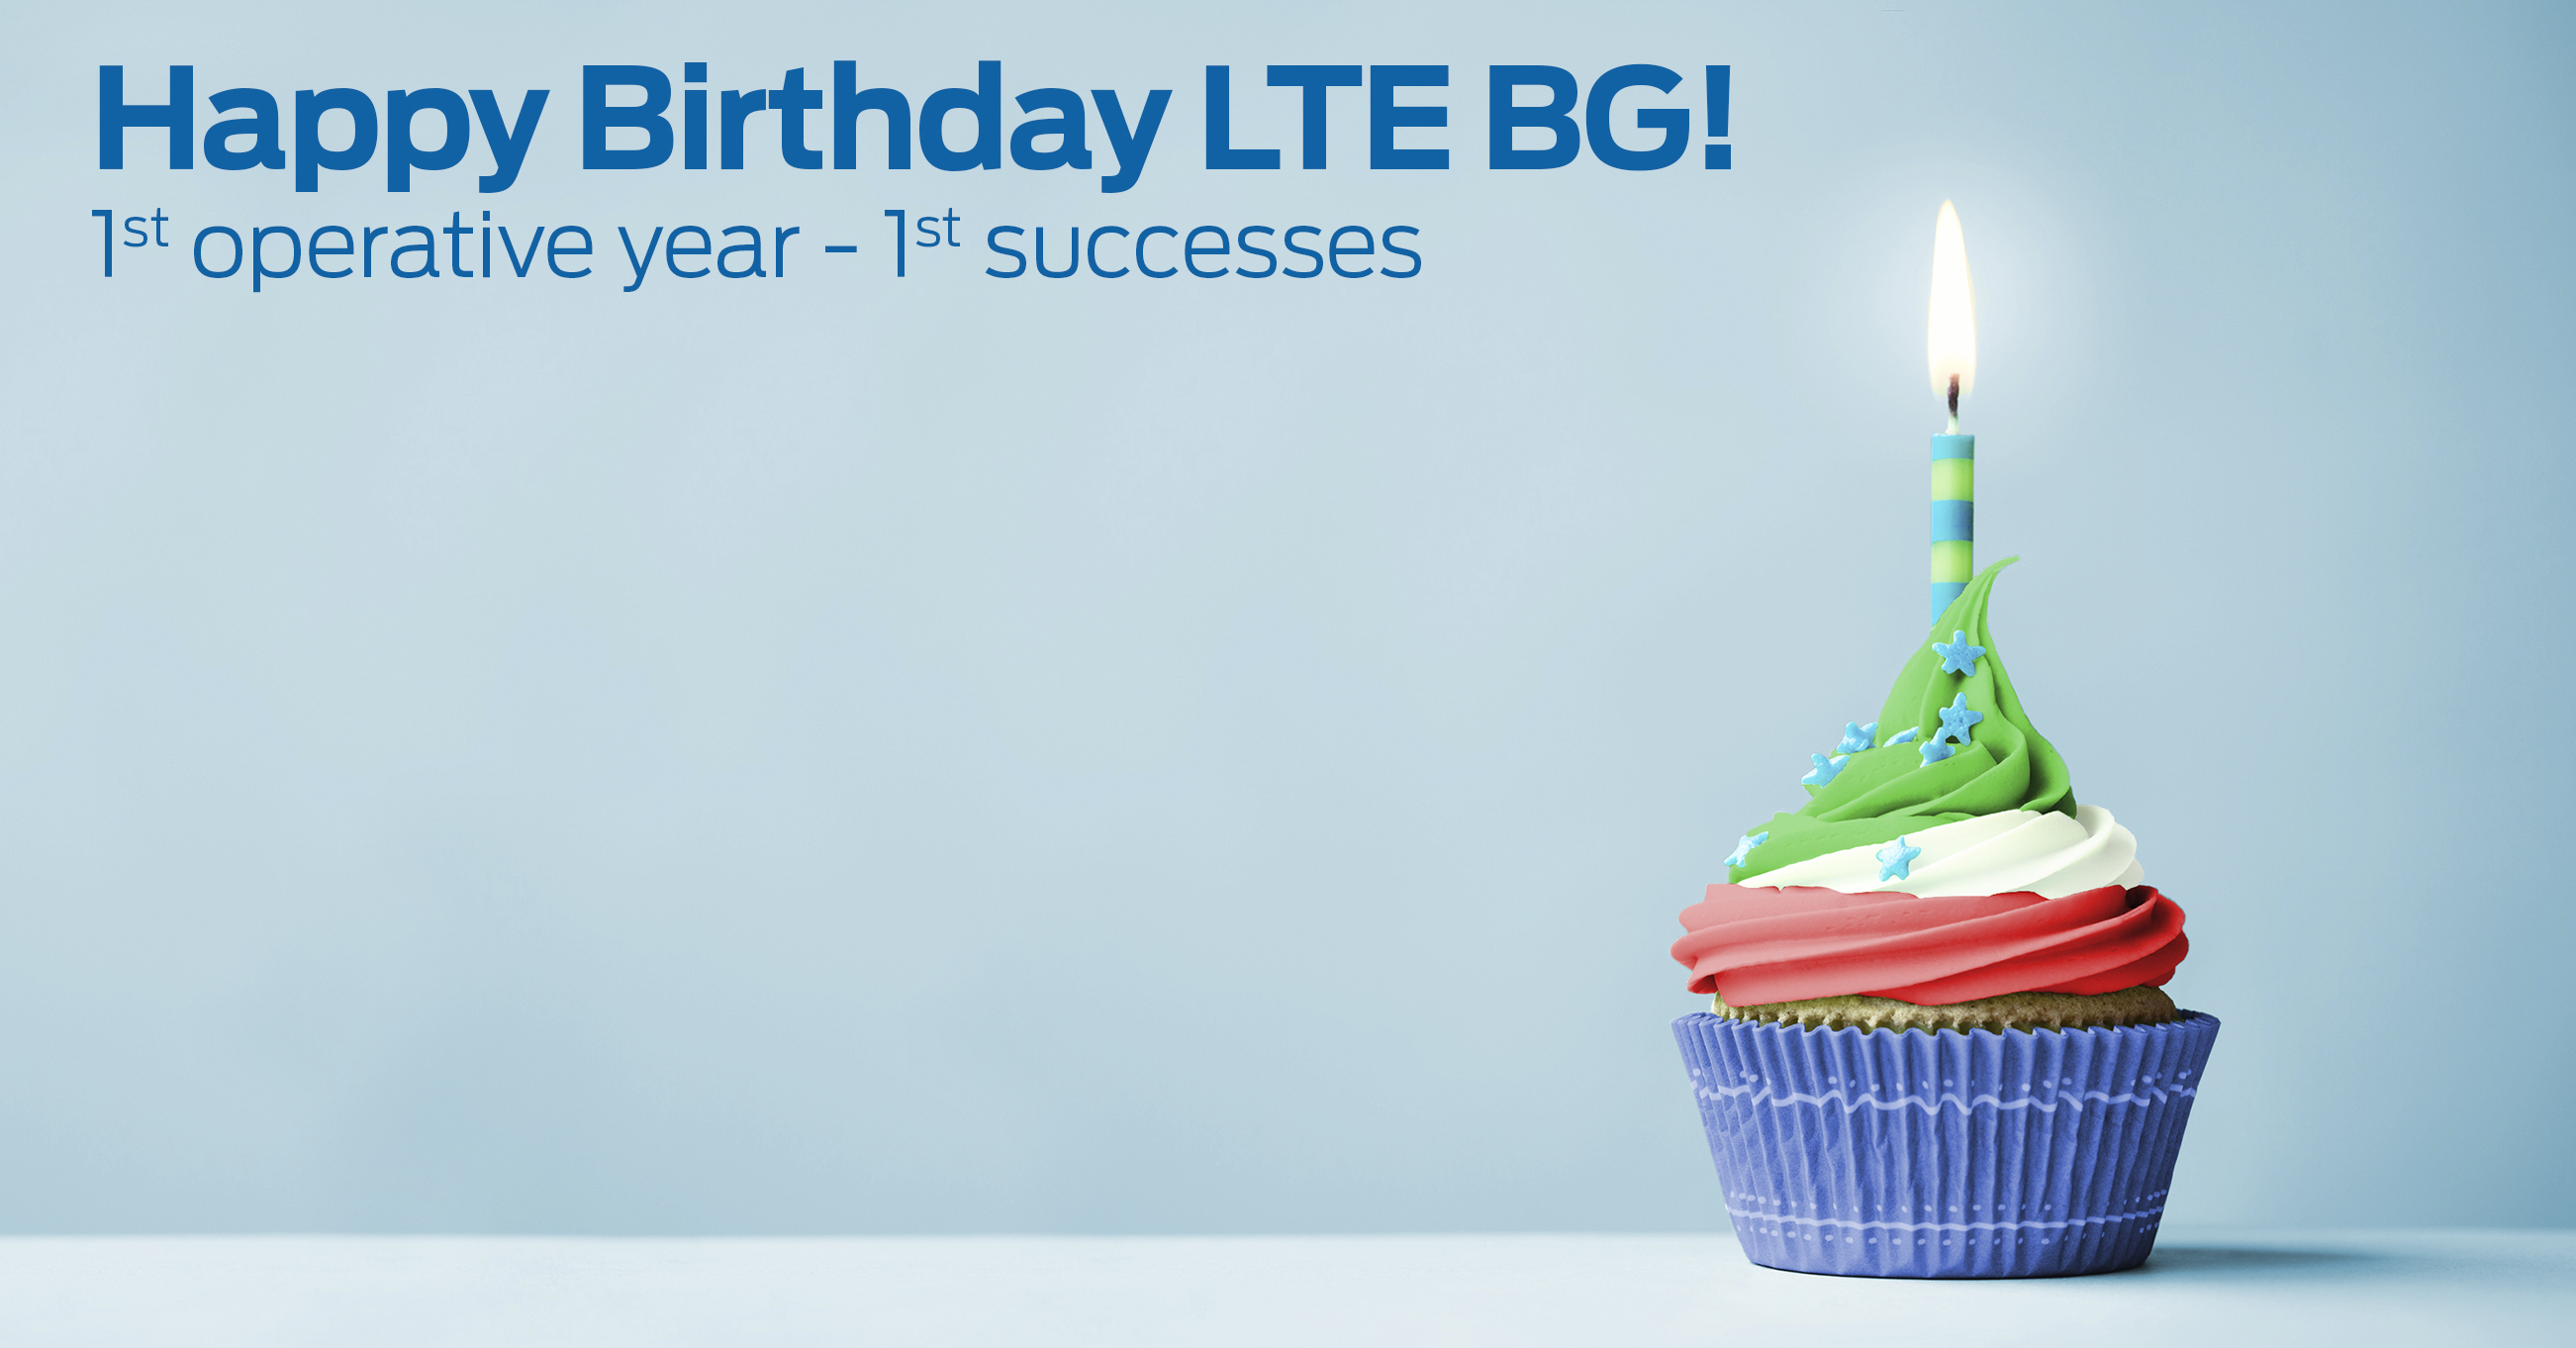 LTE BG - Alles Gute zum Geburtstag!